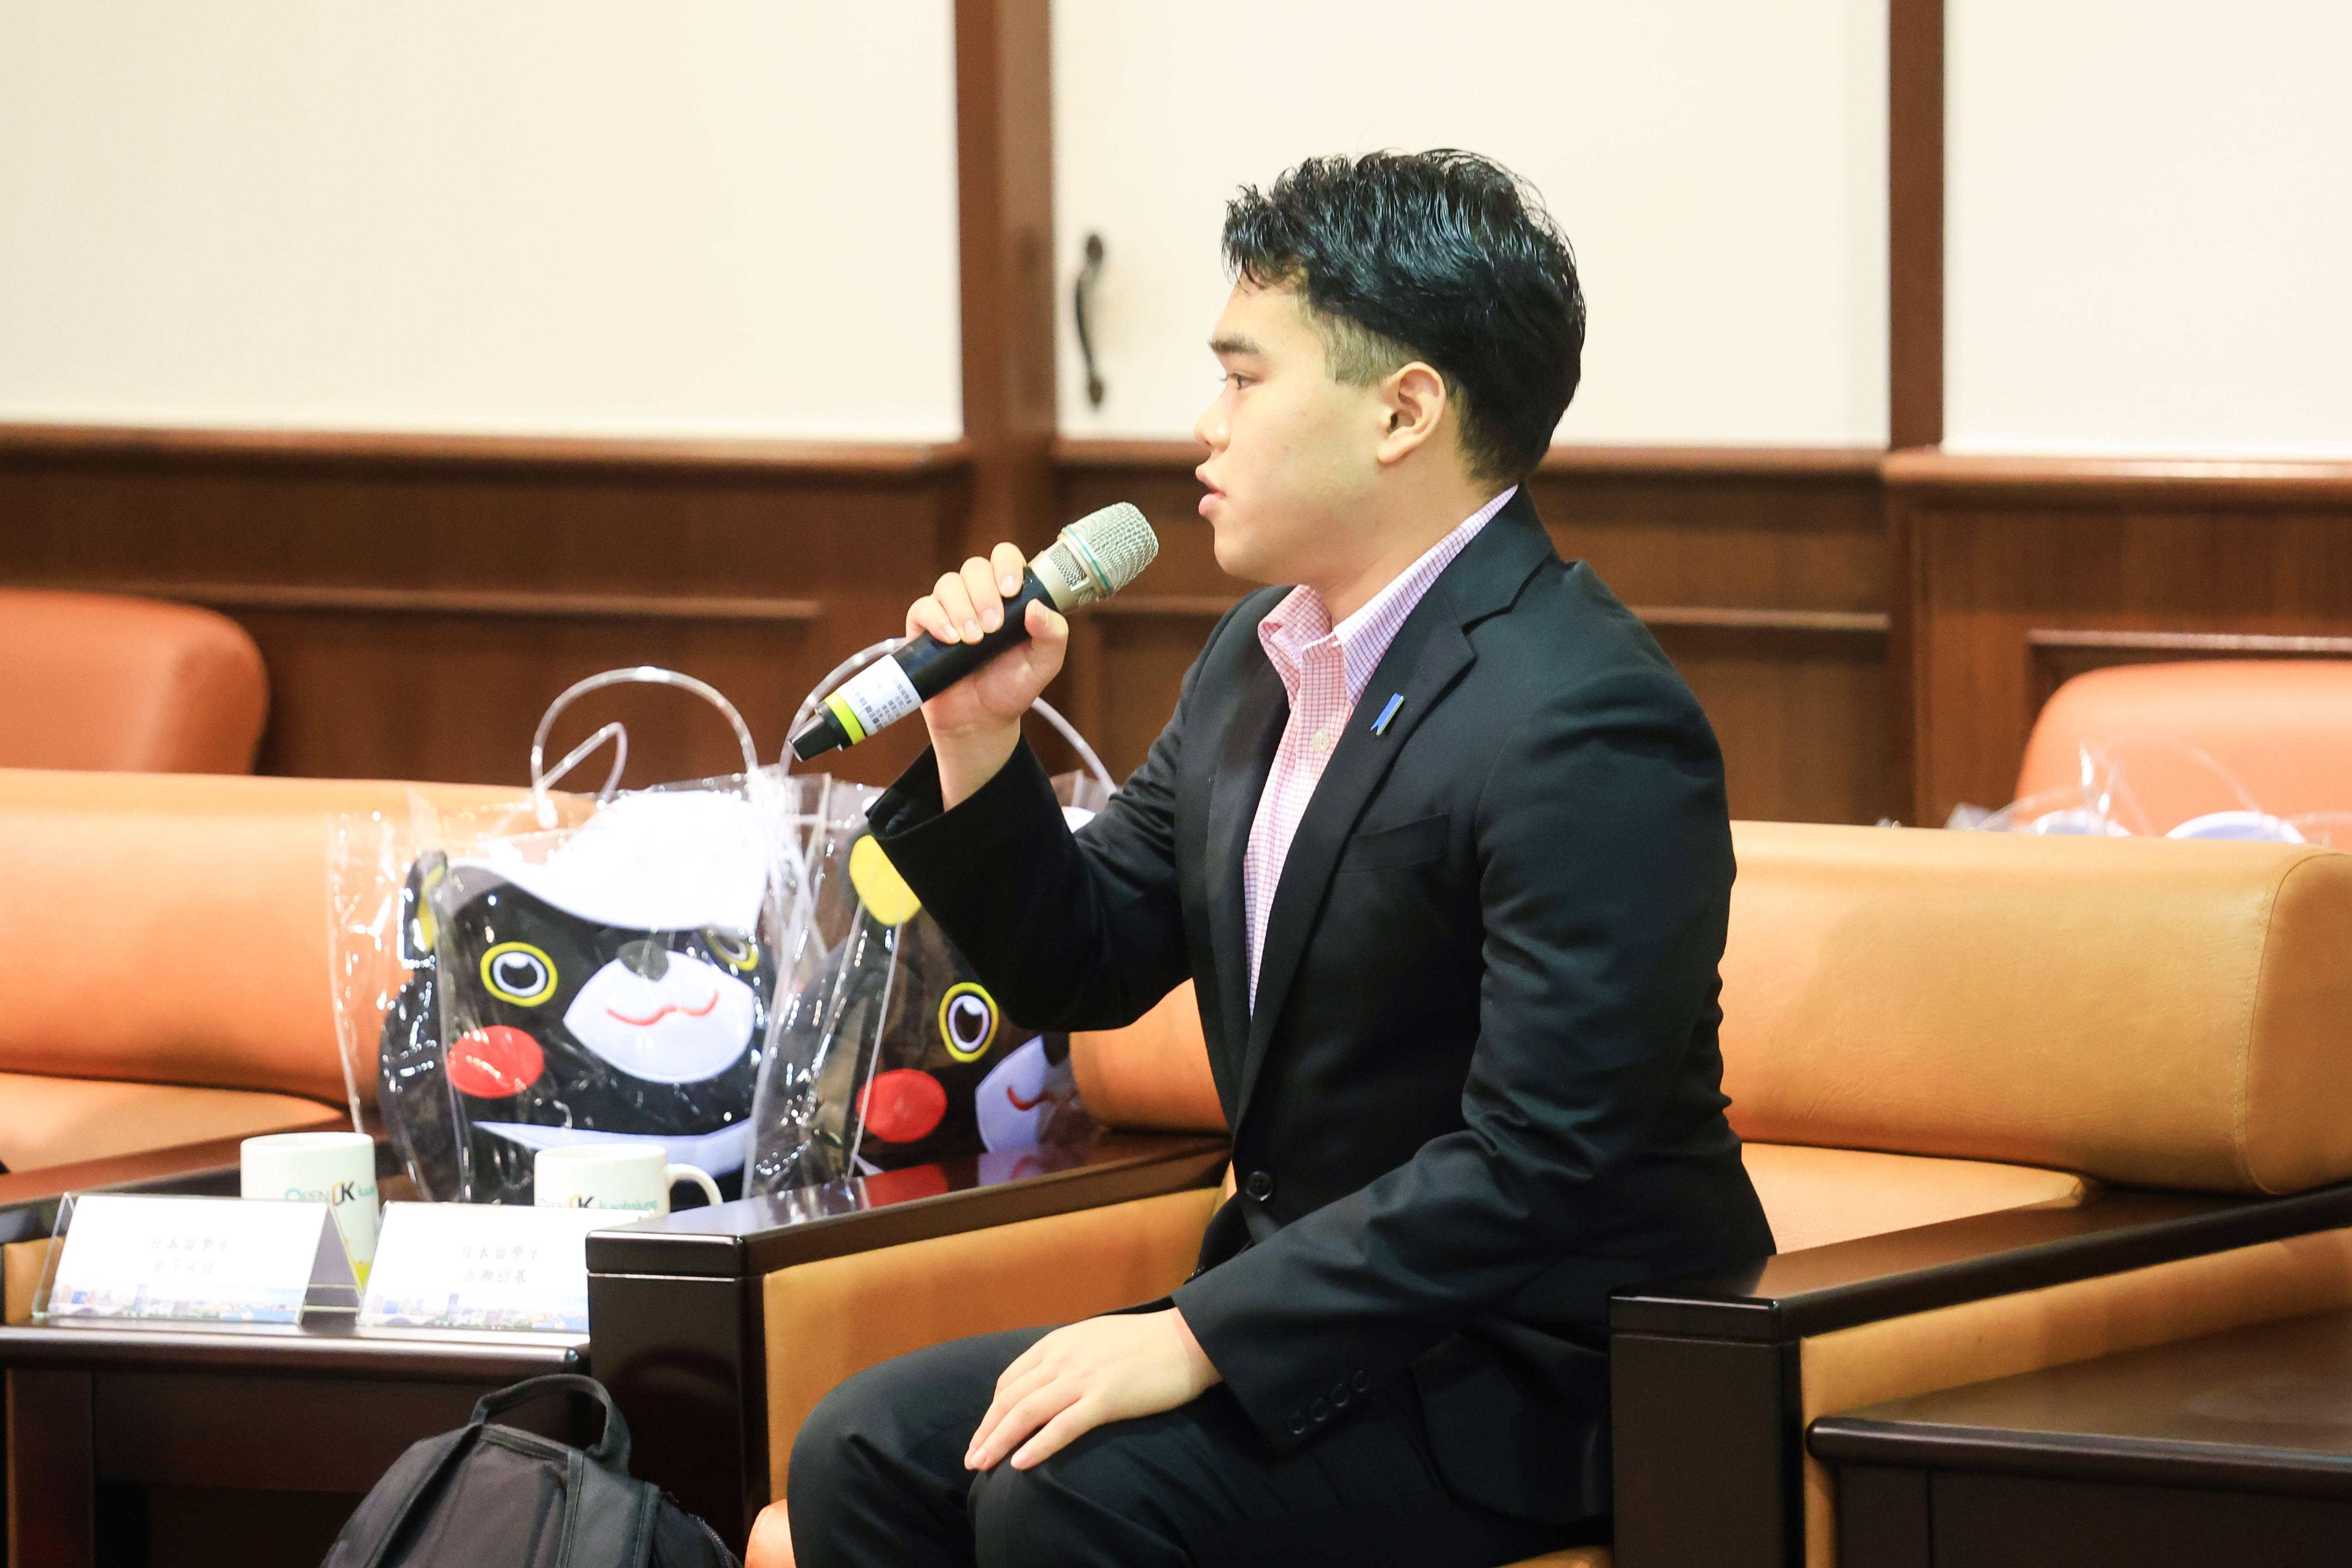 日本在台留學生赤瀨朋基期待在台灣累積對國際關係更多研究經驗